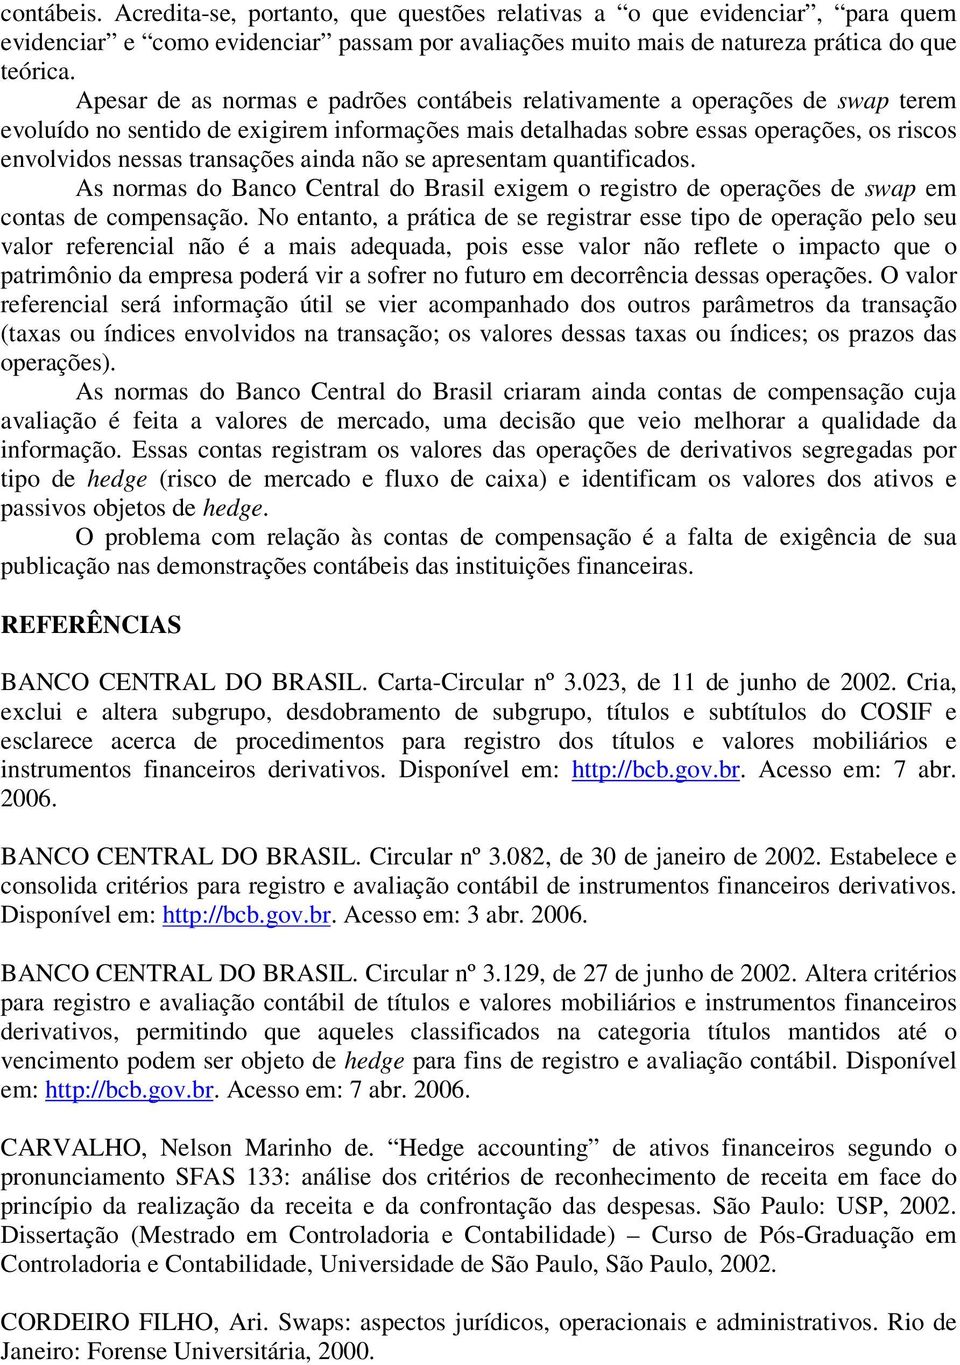 transações ainda não se apresentam quantificados. As normas do Banco Central do Brasil exigem o registro de operações de swap em contas de compensação.